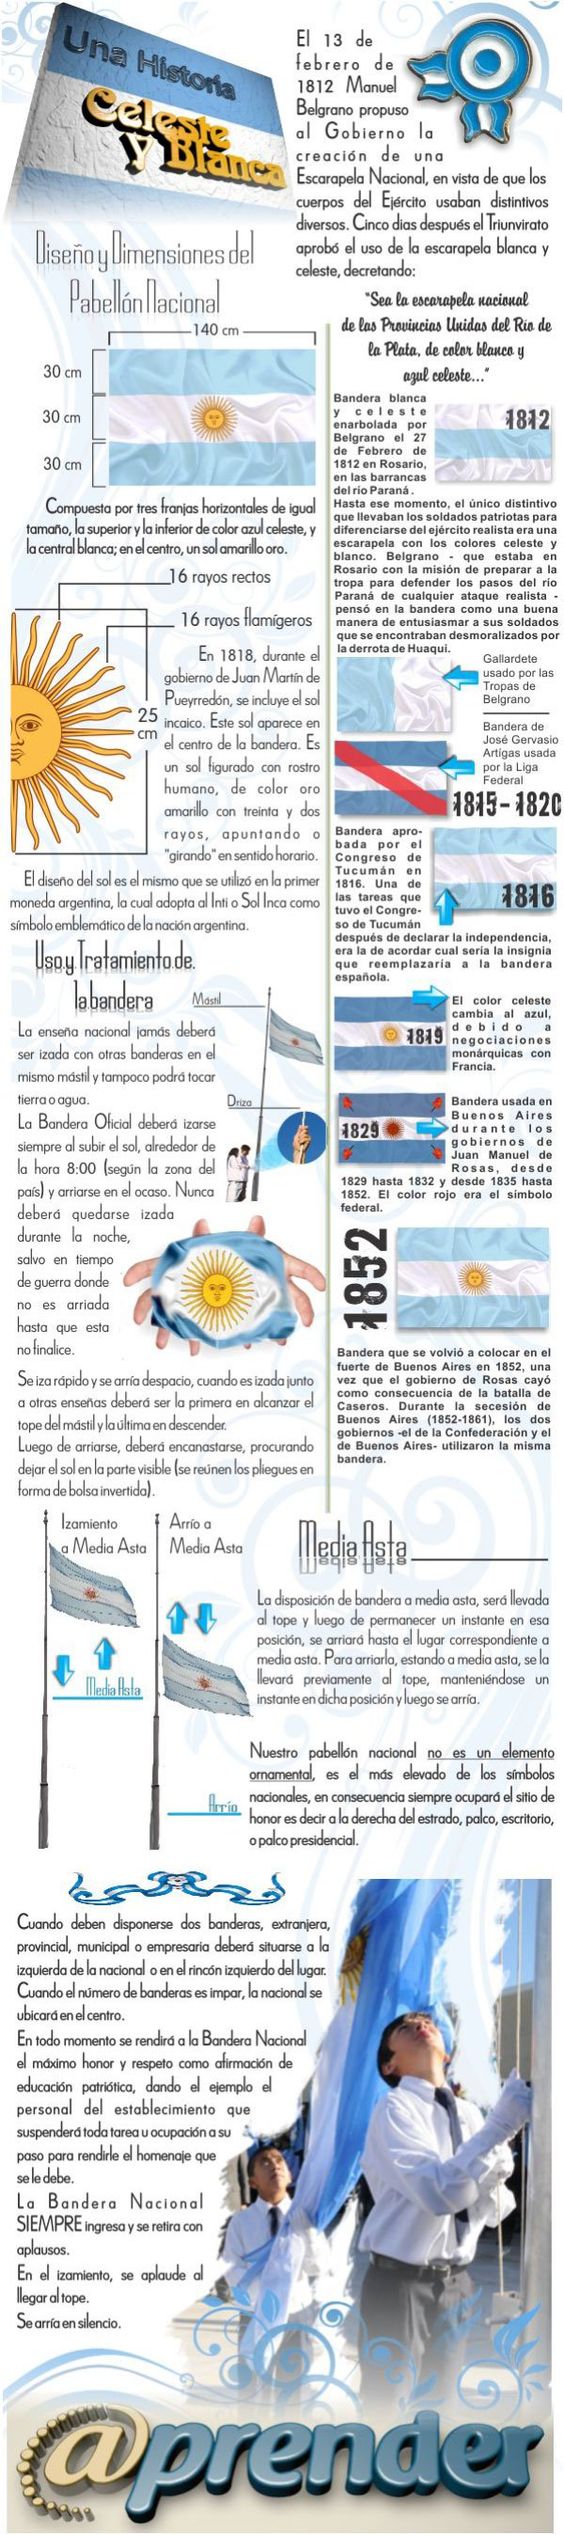 souvenirs y adornos día de la bandera argentina (11)